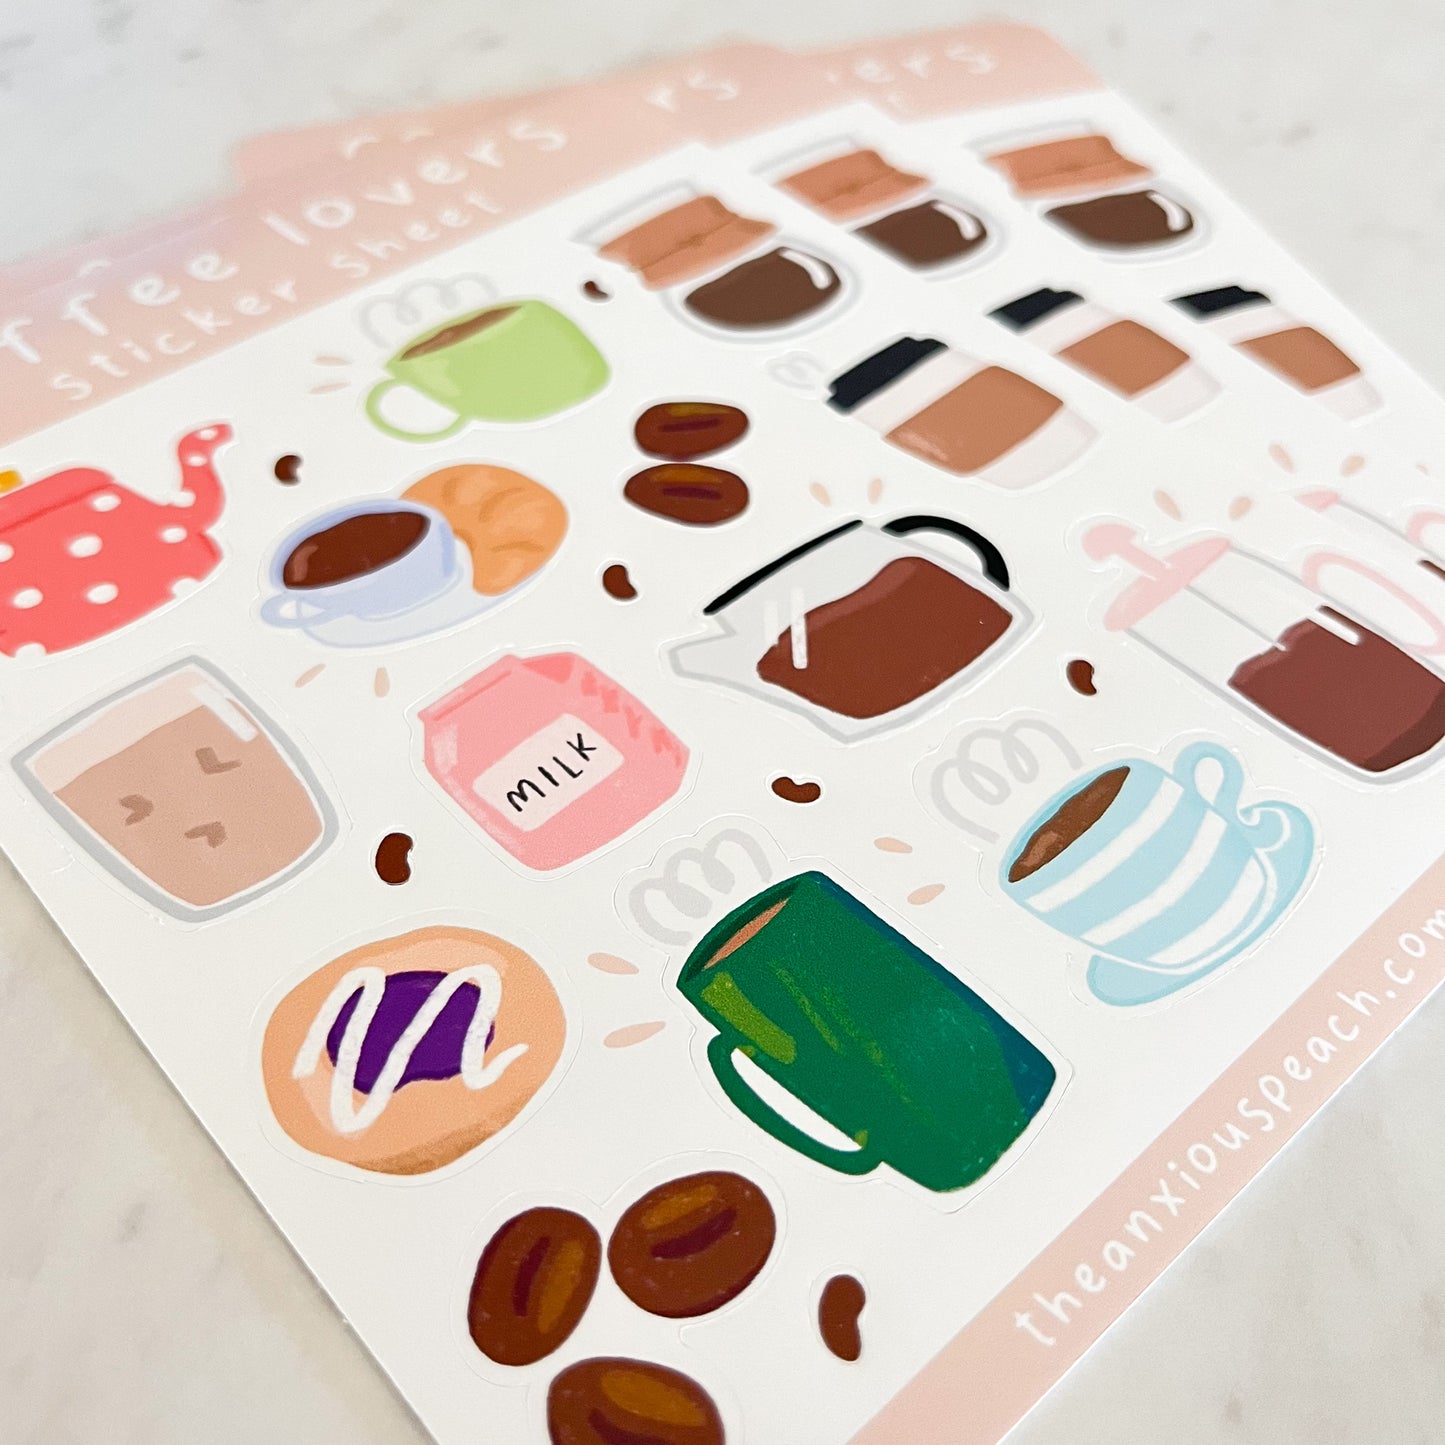 Coffee Lovers Sticker Sheet